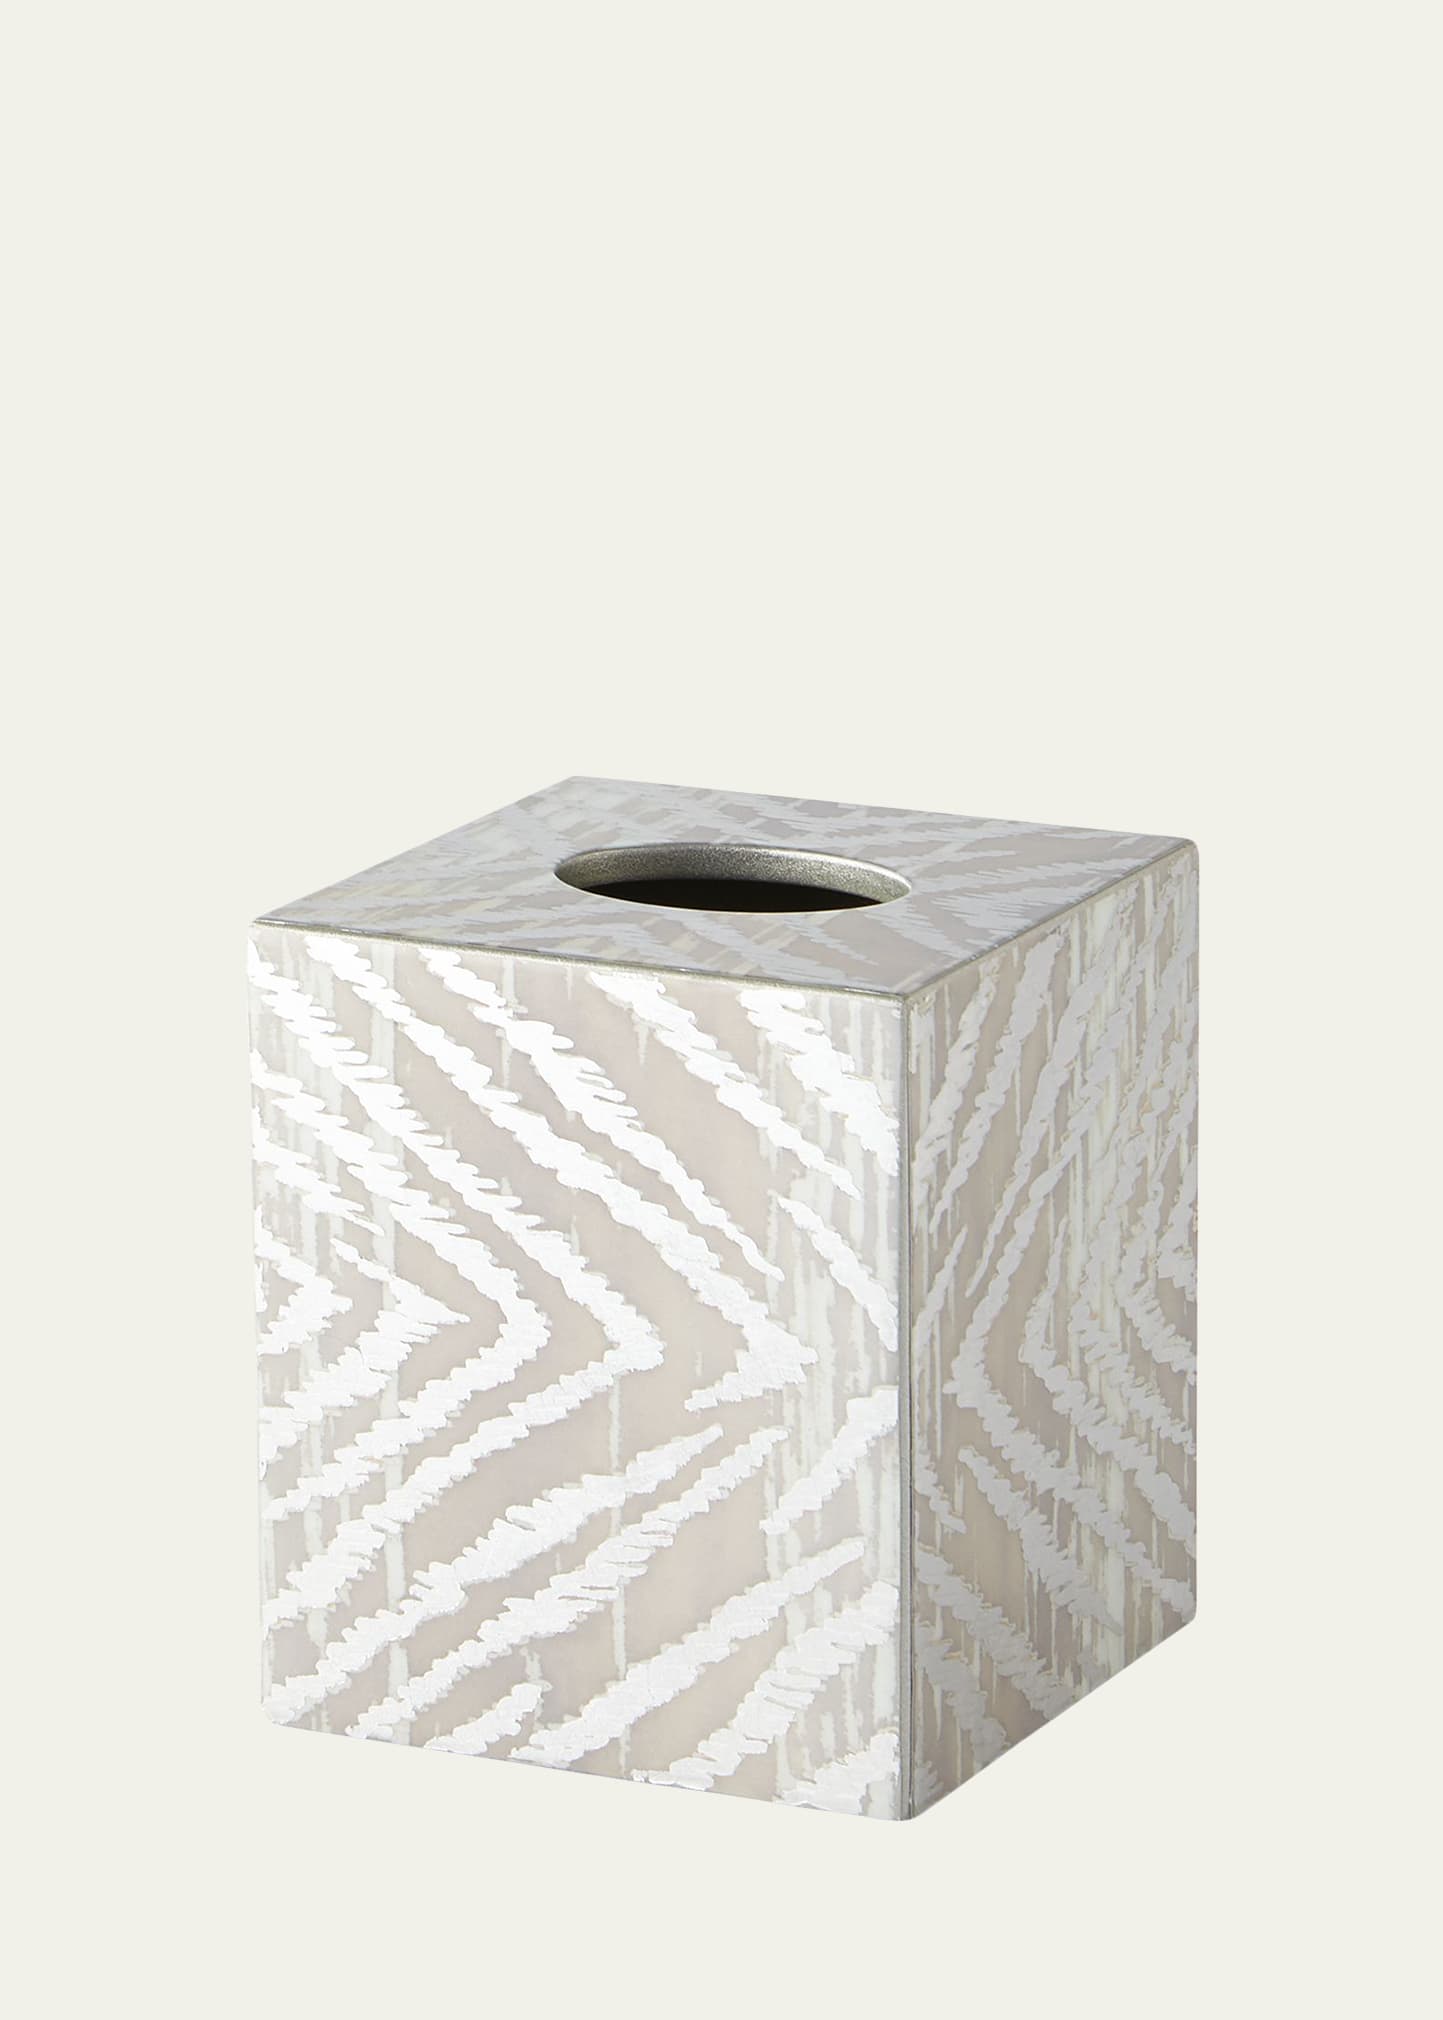 Zebra Tissue Box Cover